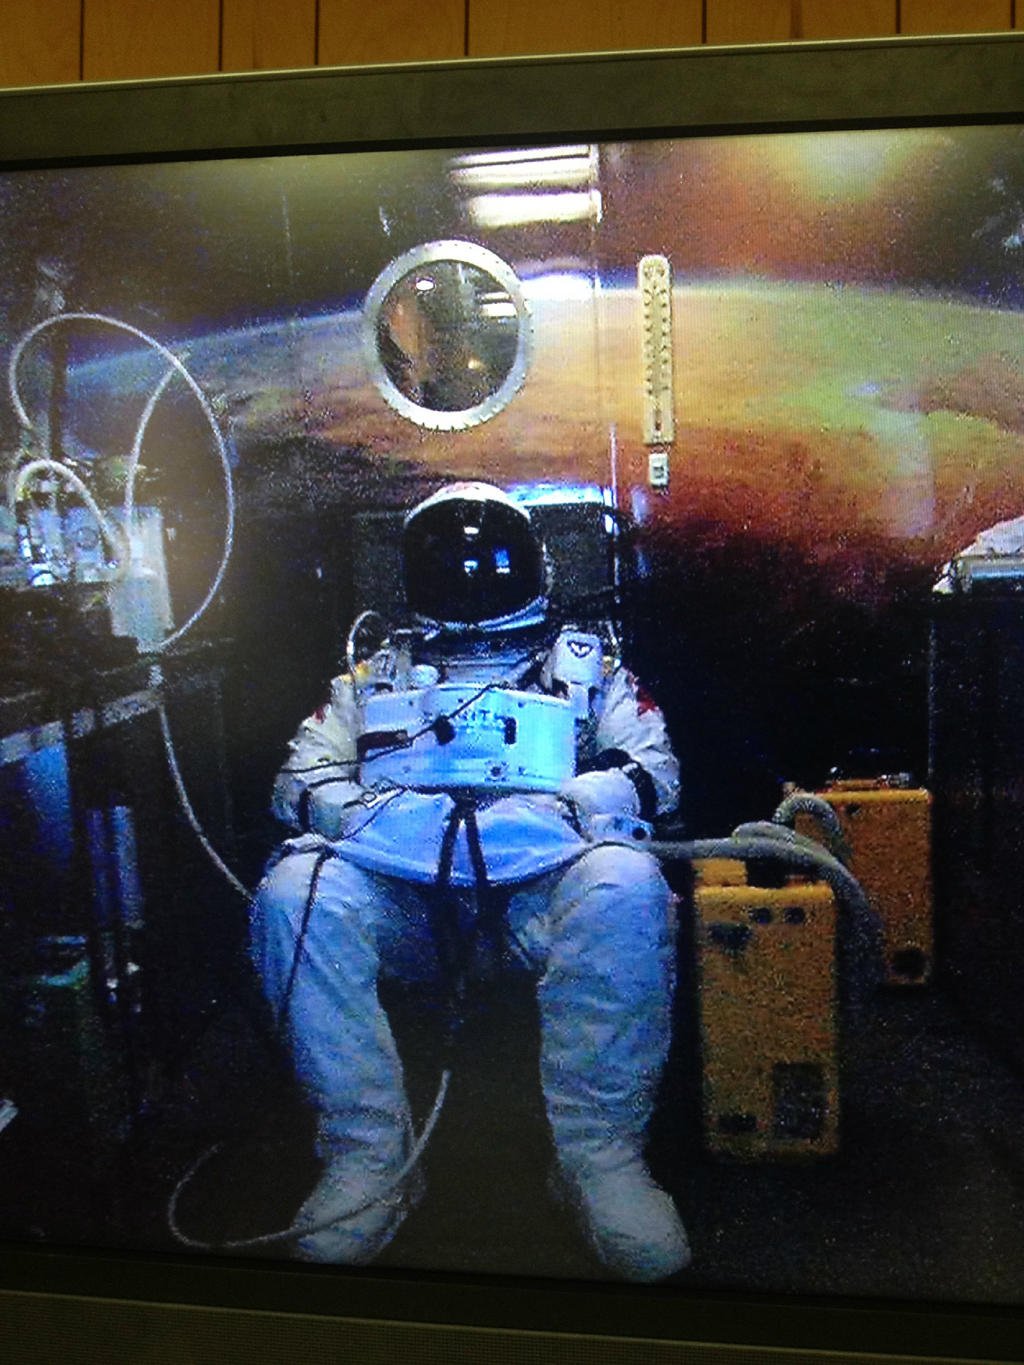 Le parachutiste autrichien, Felix Baumgartner, le 9 octobre 2012, en pleine séance de dénitrogénation avant sa première tentative du saut le plus haut du monde (qu'il réussira, avec passage du mur du son, quelques jours plus tard, le 14 octobre). En sortant de la capsule pressurisée à plus de 39 km d'altitude, il sera exposé à des conditions proches de celles d'un astronaute effectuant une sortie extravéhiculaire dans l'espace. © Red Bull Stratos